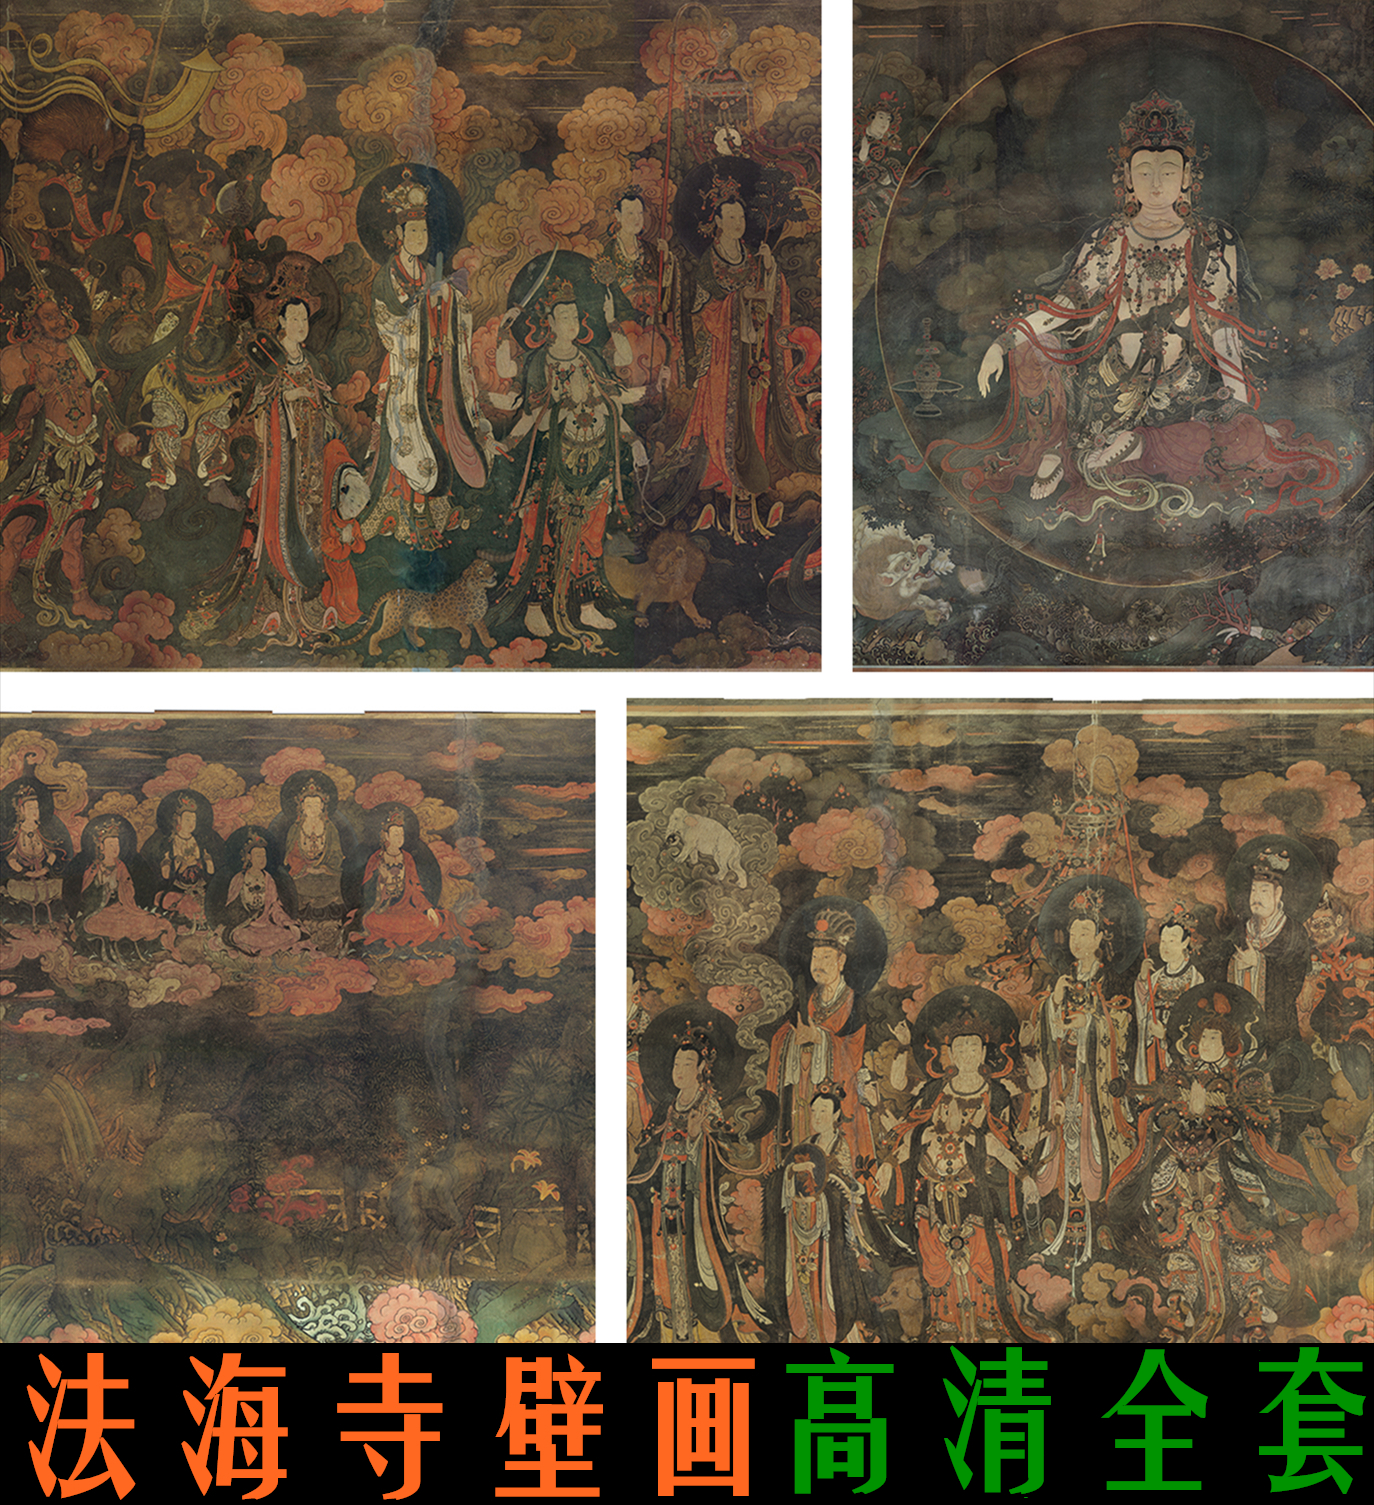 佛菩萨像壁画设计 佛菩萨像壁画下载 佛菩萨像壁画教学 图片 淘宝海外